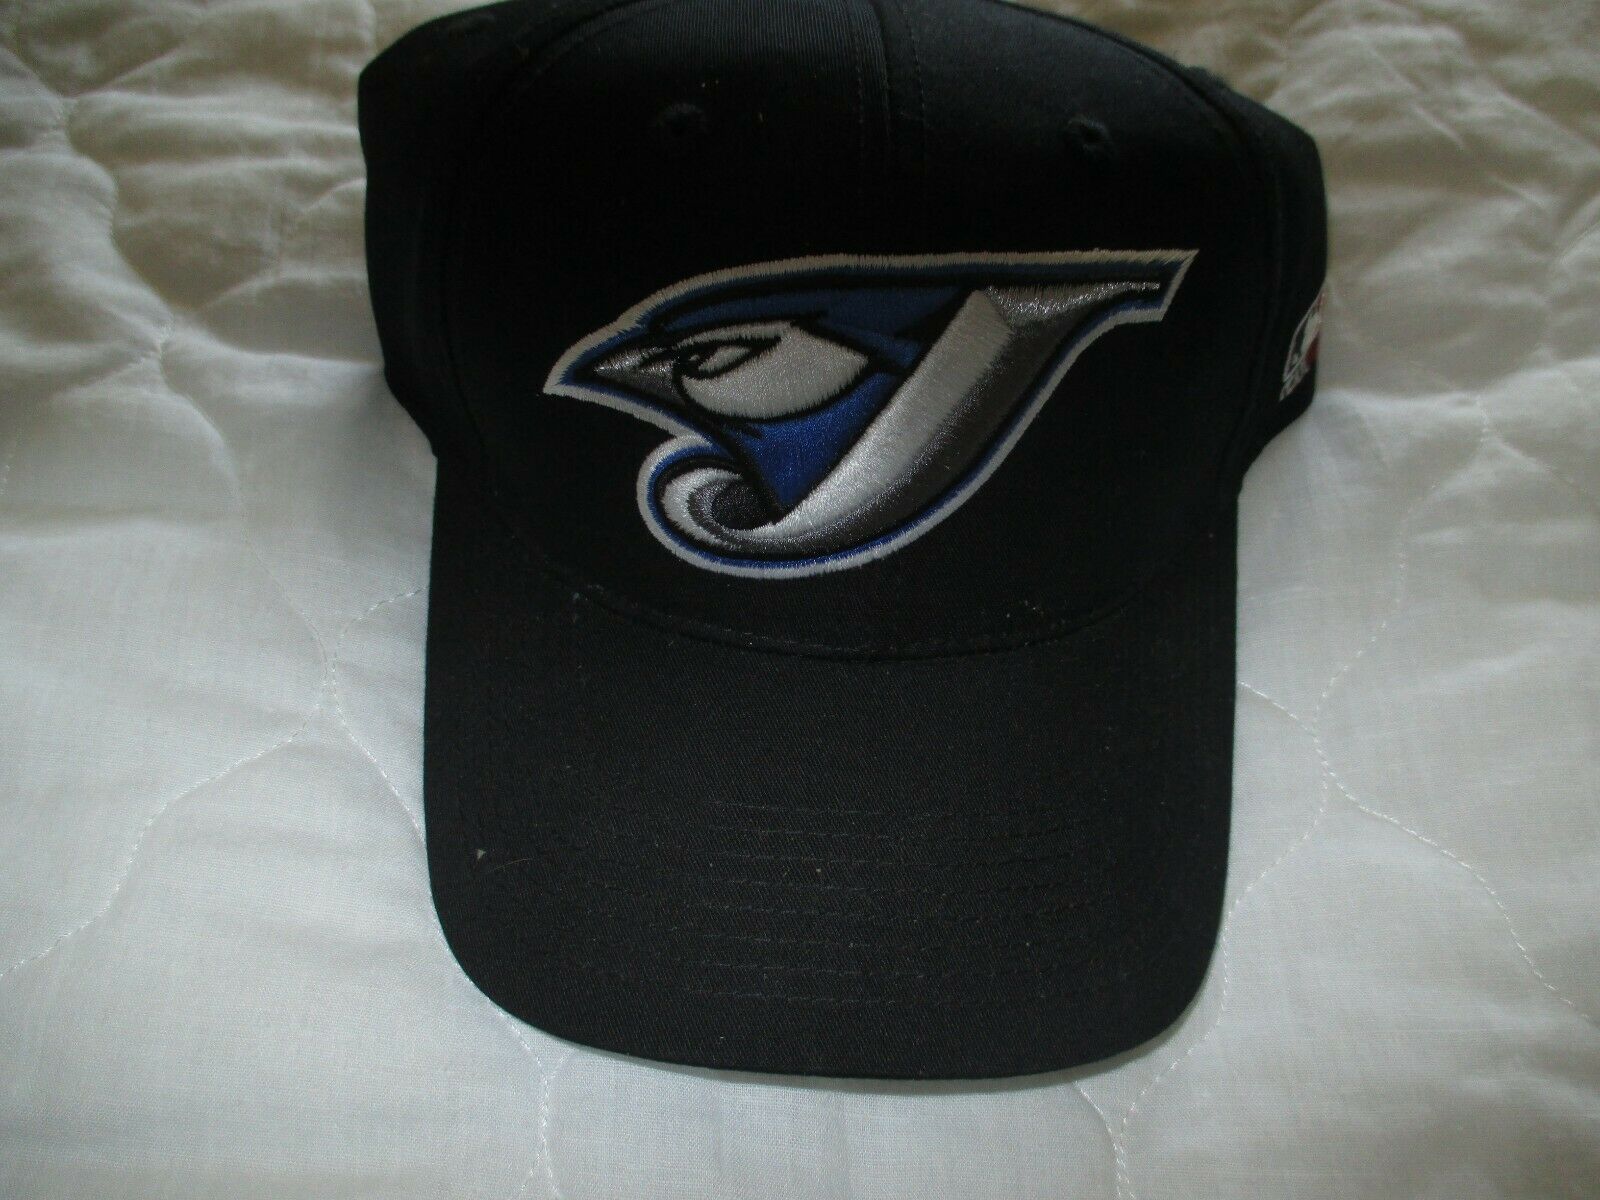 Toronto Blue Jays Hat, Blue Jays Hats, Baseball Cap